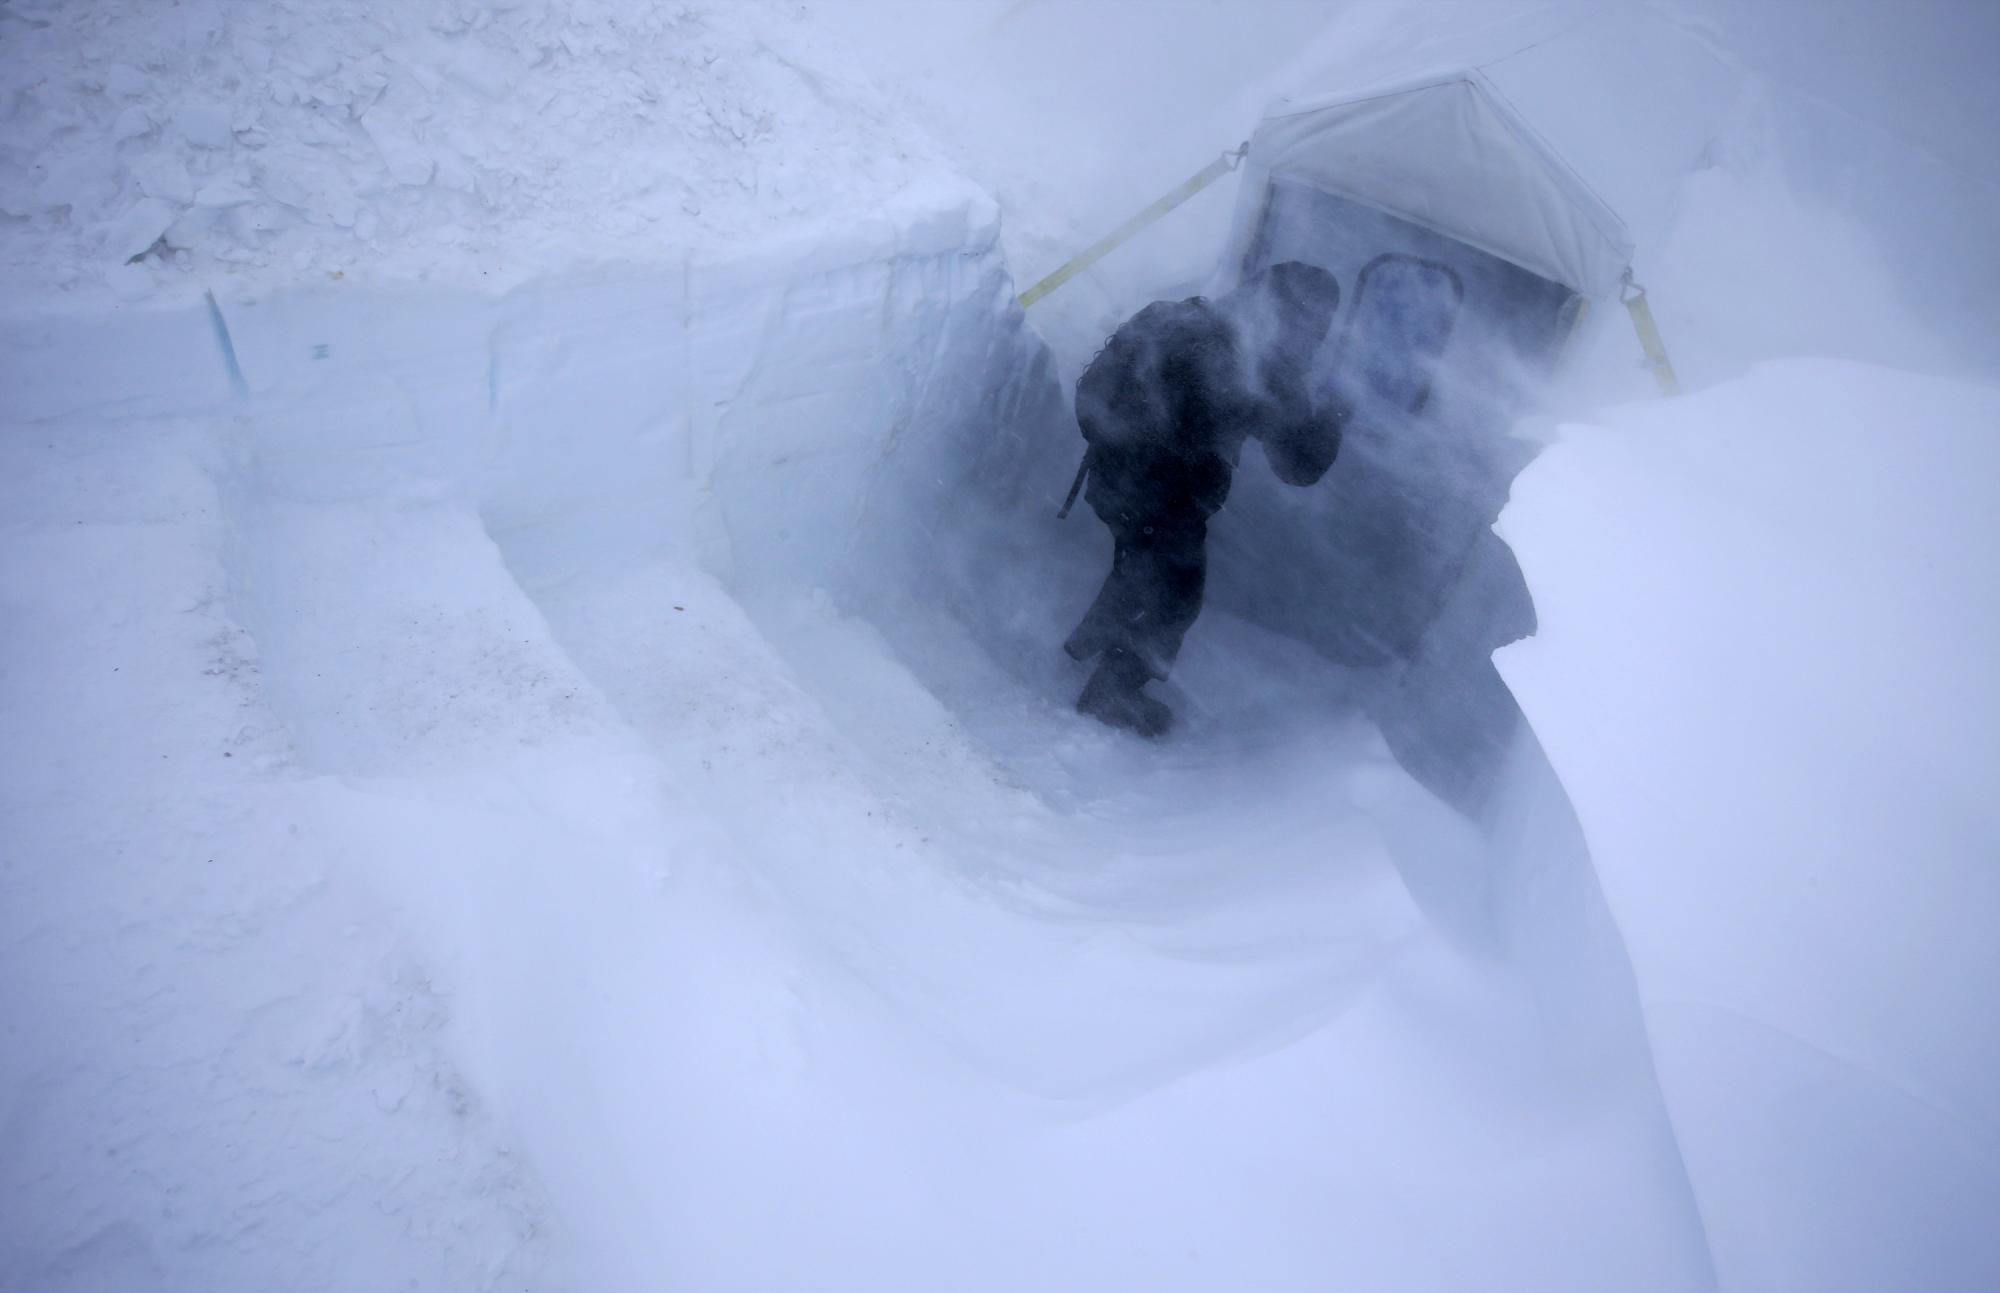 Fotografía del 29 de noviembre de 2015, que muestra a un hombre buscando refugio en un carpa semienterrada en la nieve durante una ventisca.